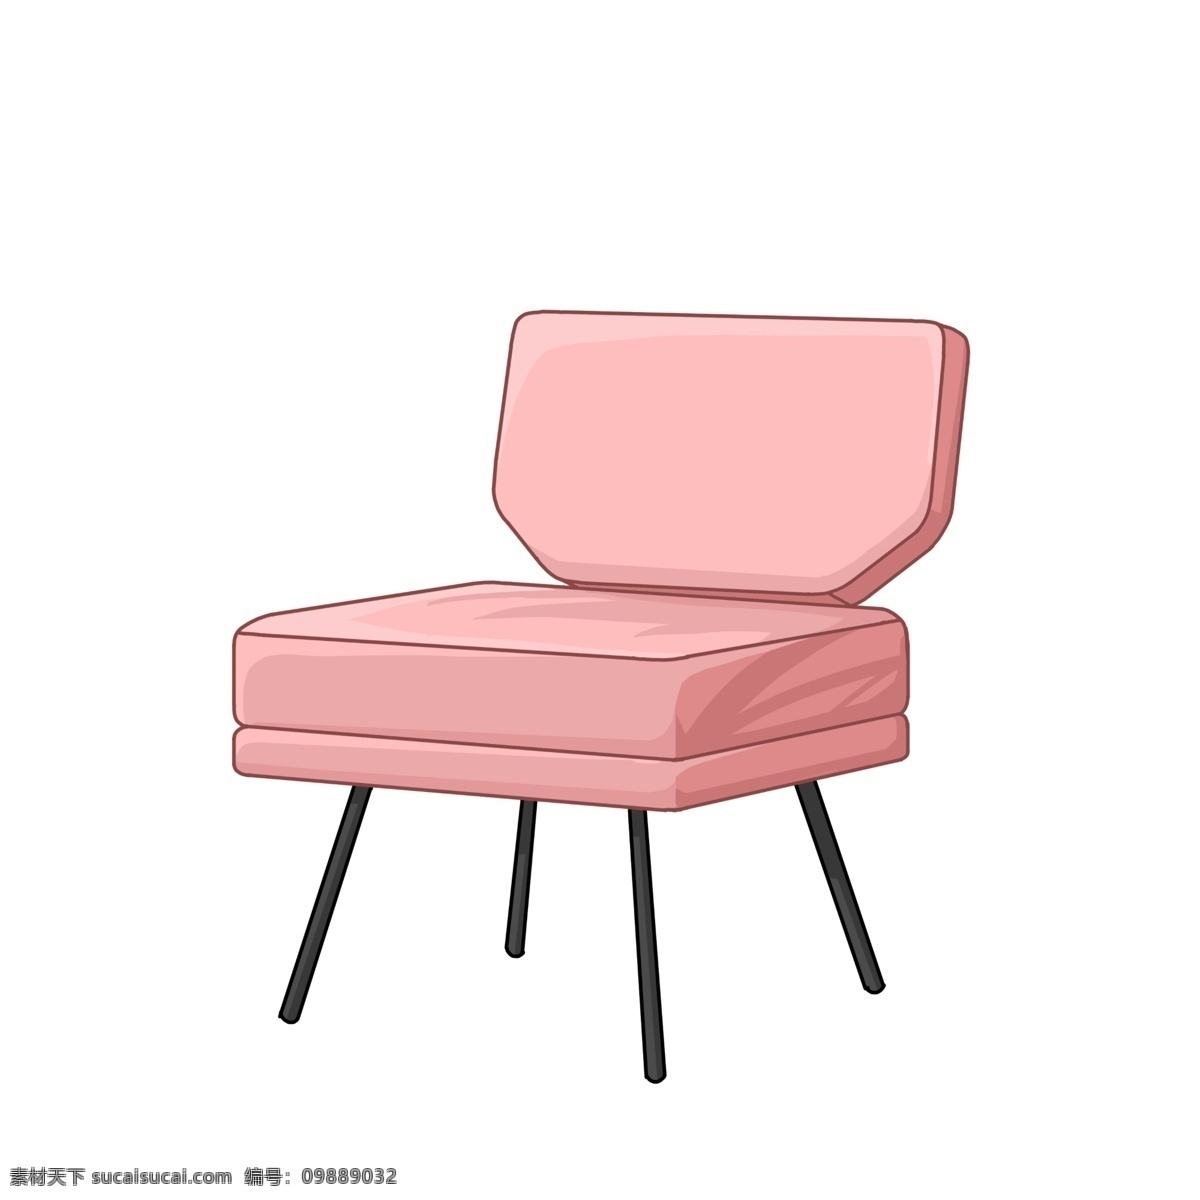 手绘 粉色 沙发 插画 家具 凳子 卡通插画 沙发椅插画 手绘沙发 粉色沙发 沙发椅 现代椅子